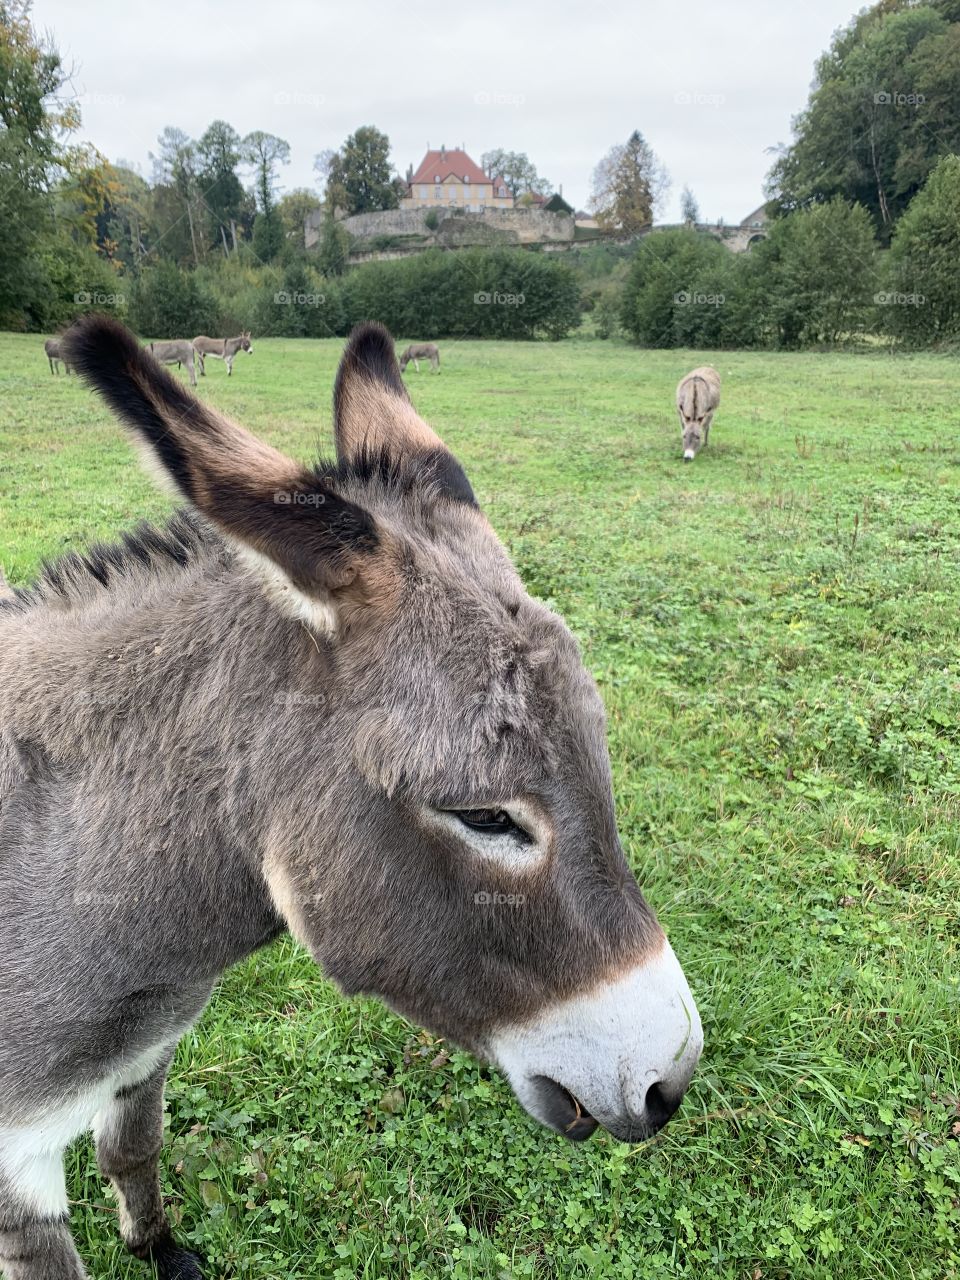 Donkey life 